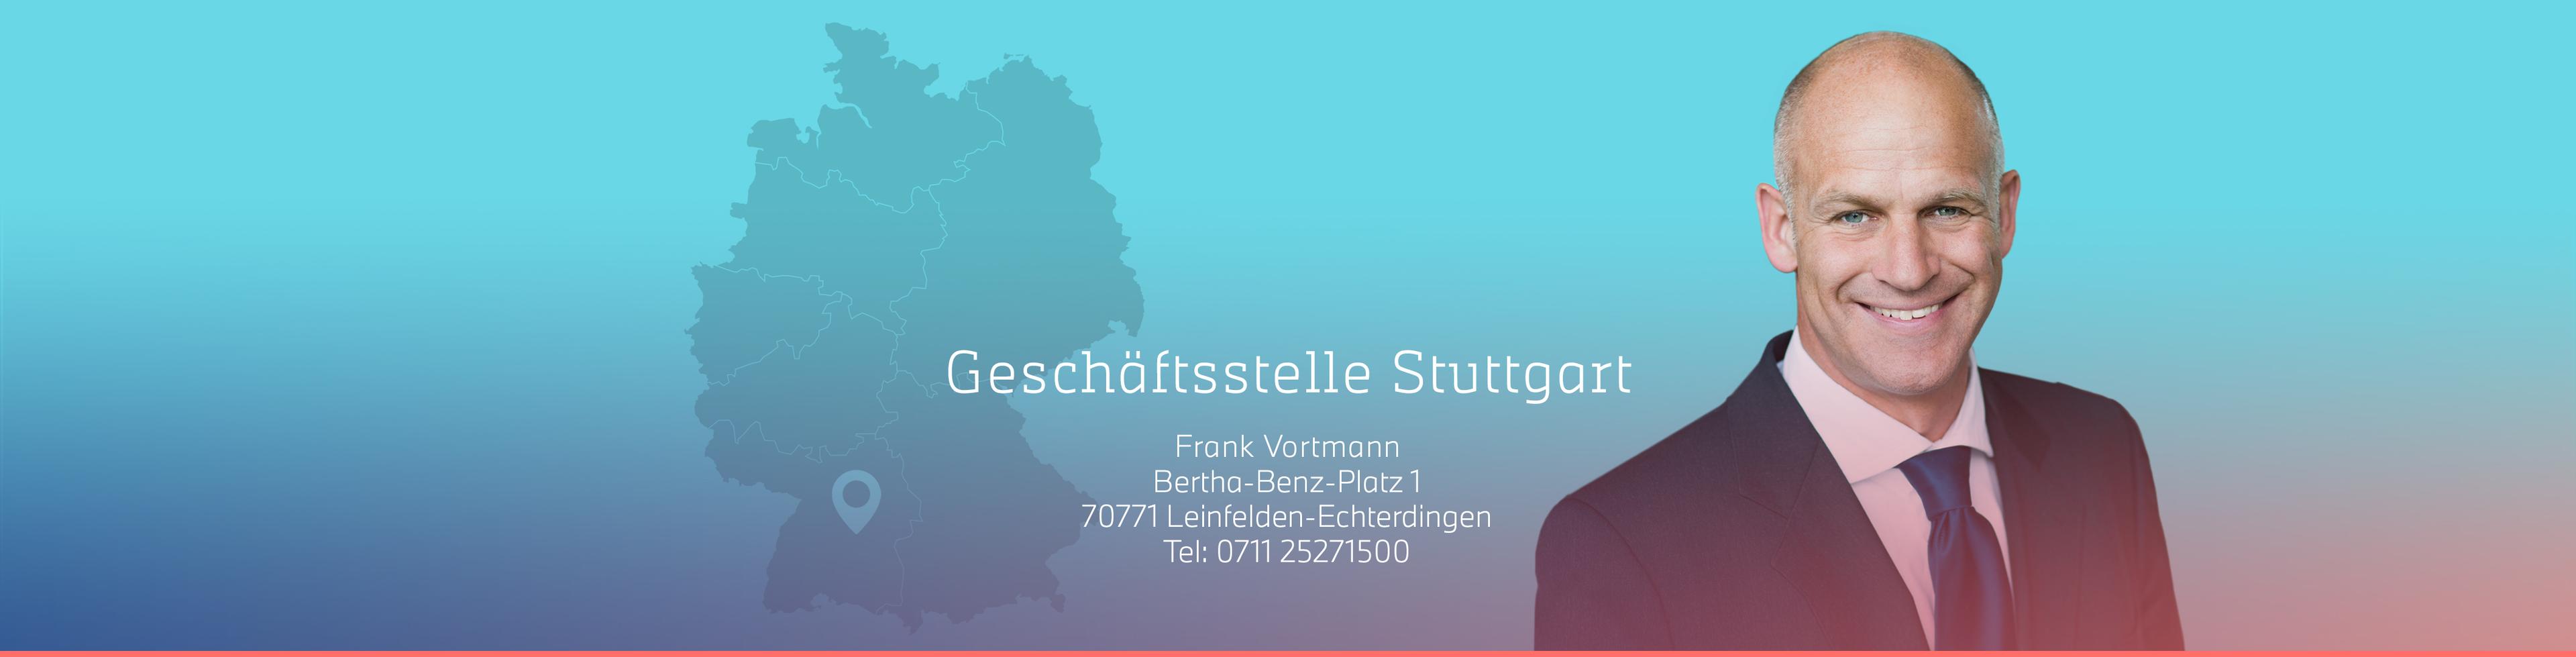 Frank Vortmann_GST_Stuttgart